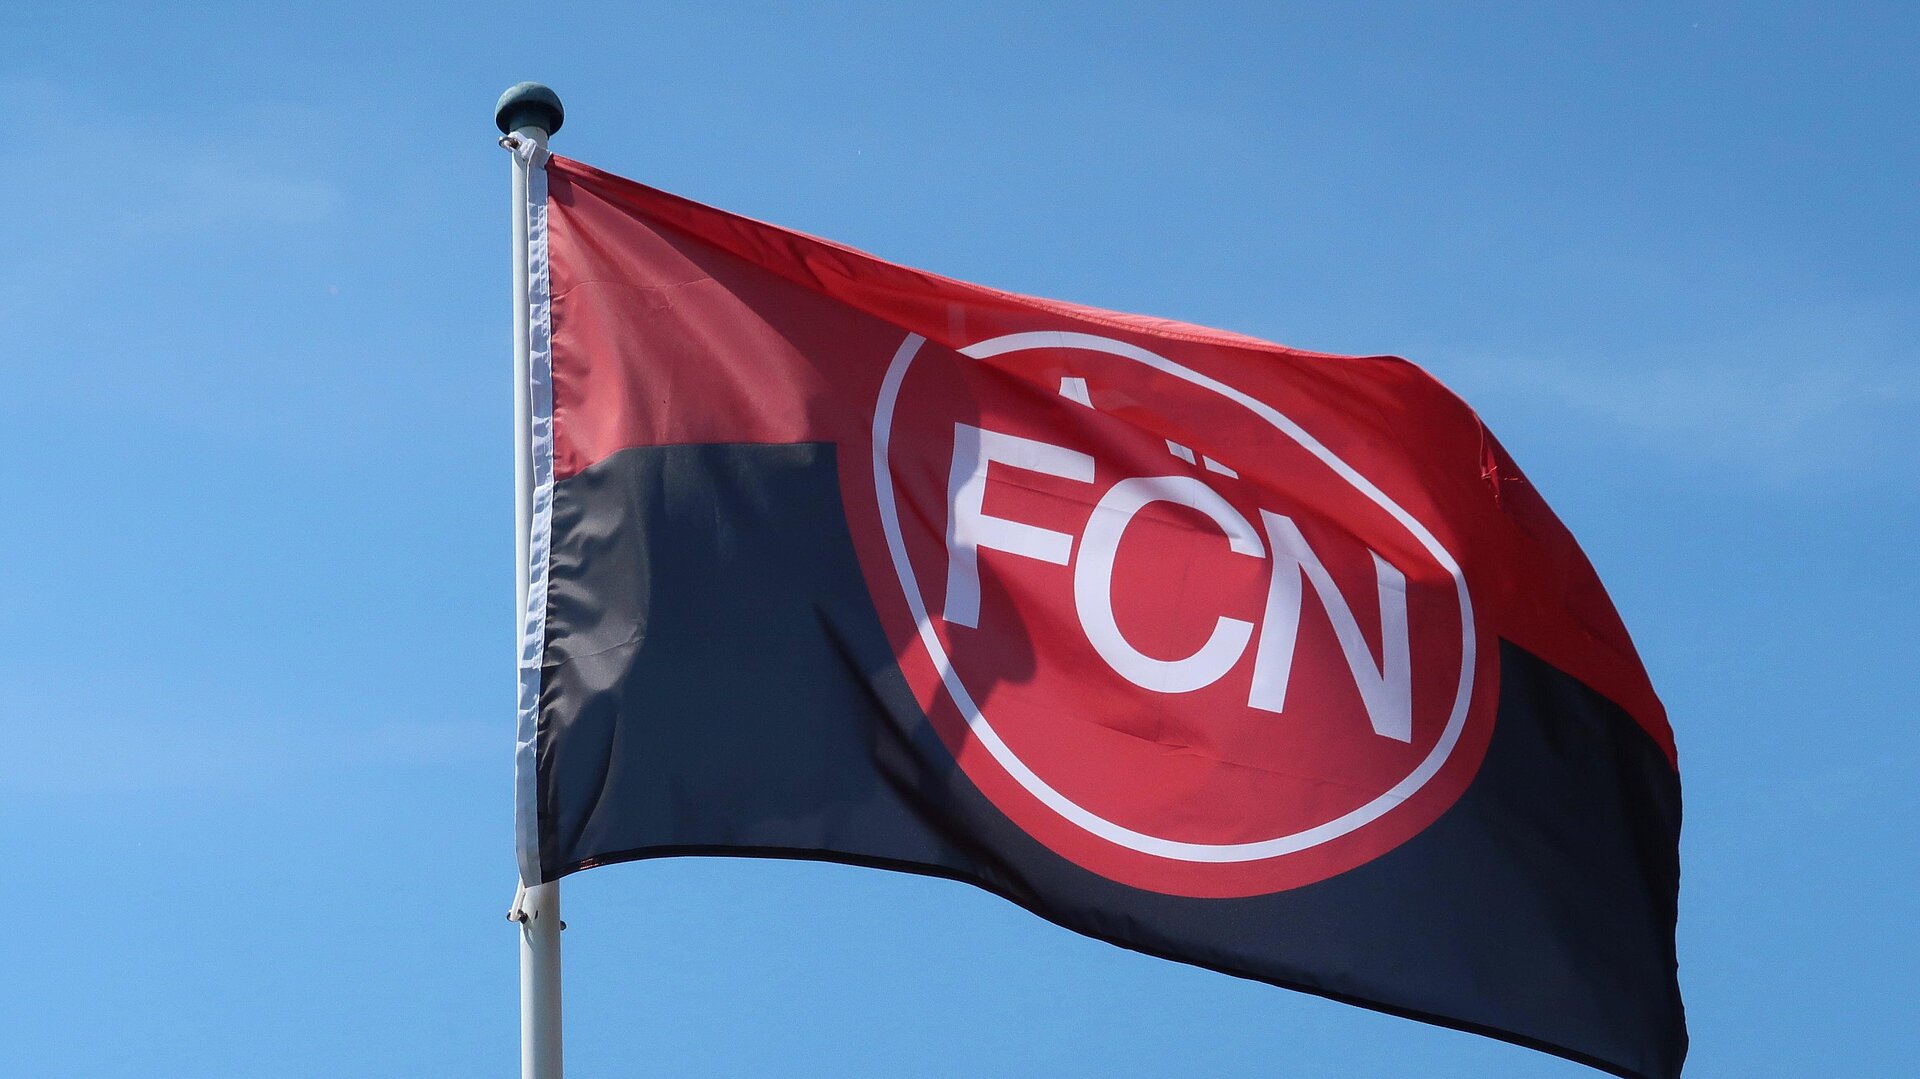 Fussball in Nürnberg - Flagge 1. FCN